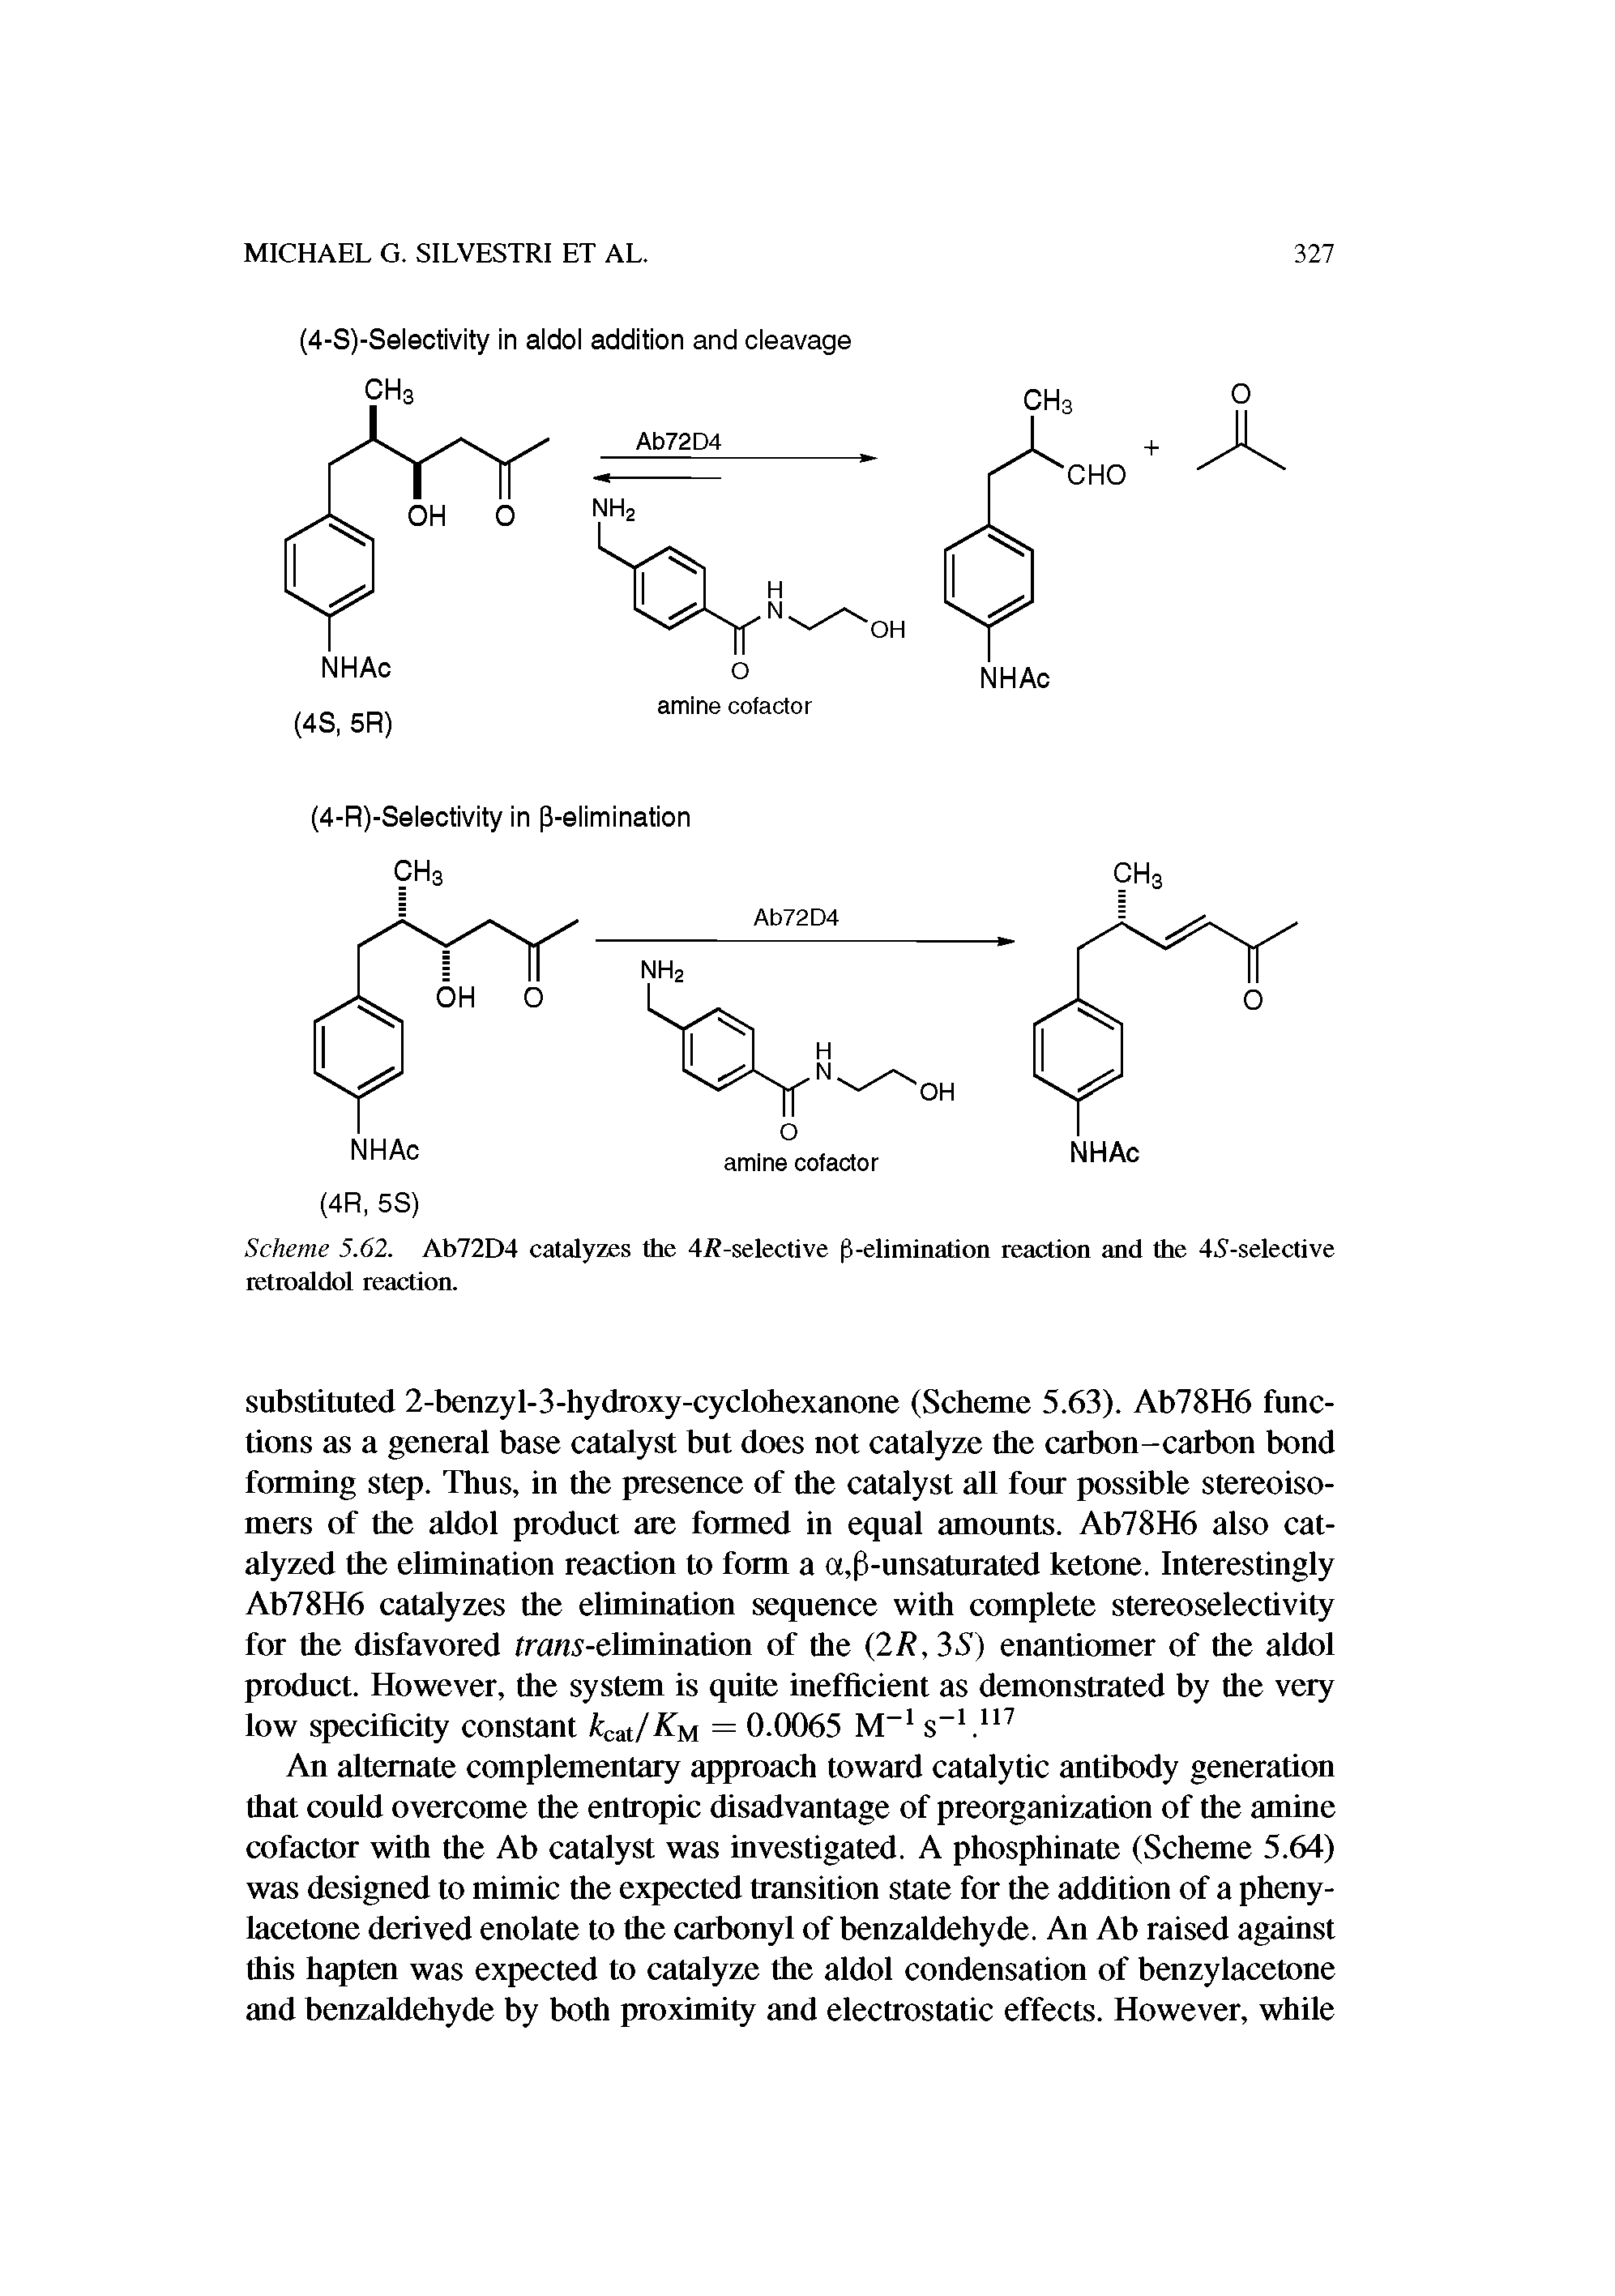 Scheme 5.62. Ab72D4 catalyzes the 4/( -selective p-elimination reaction and the 45-selective retroaldol reaction.